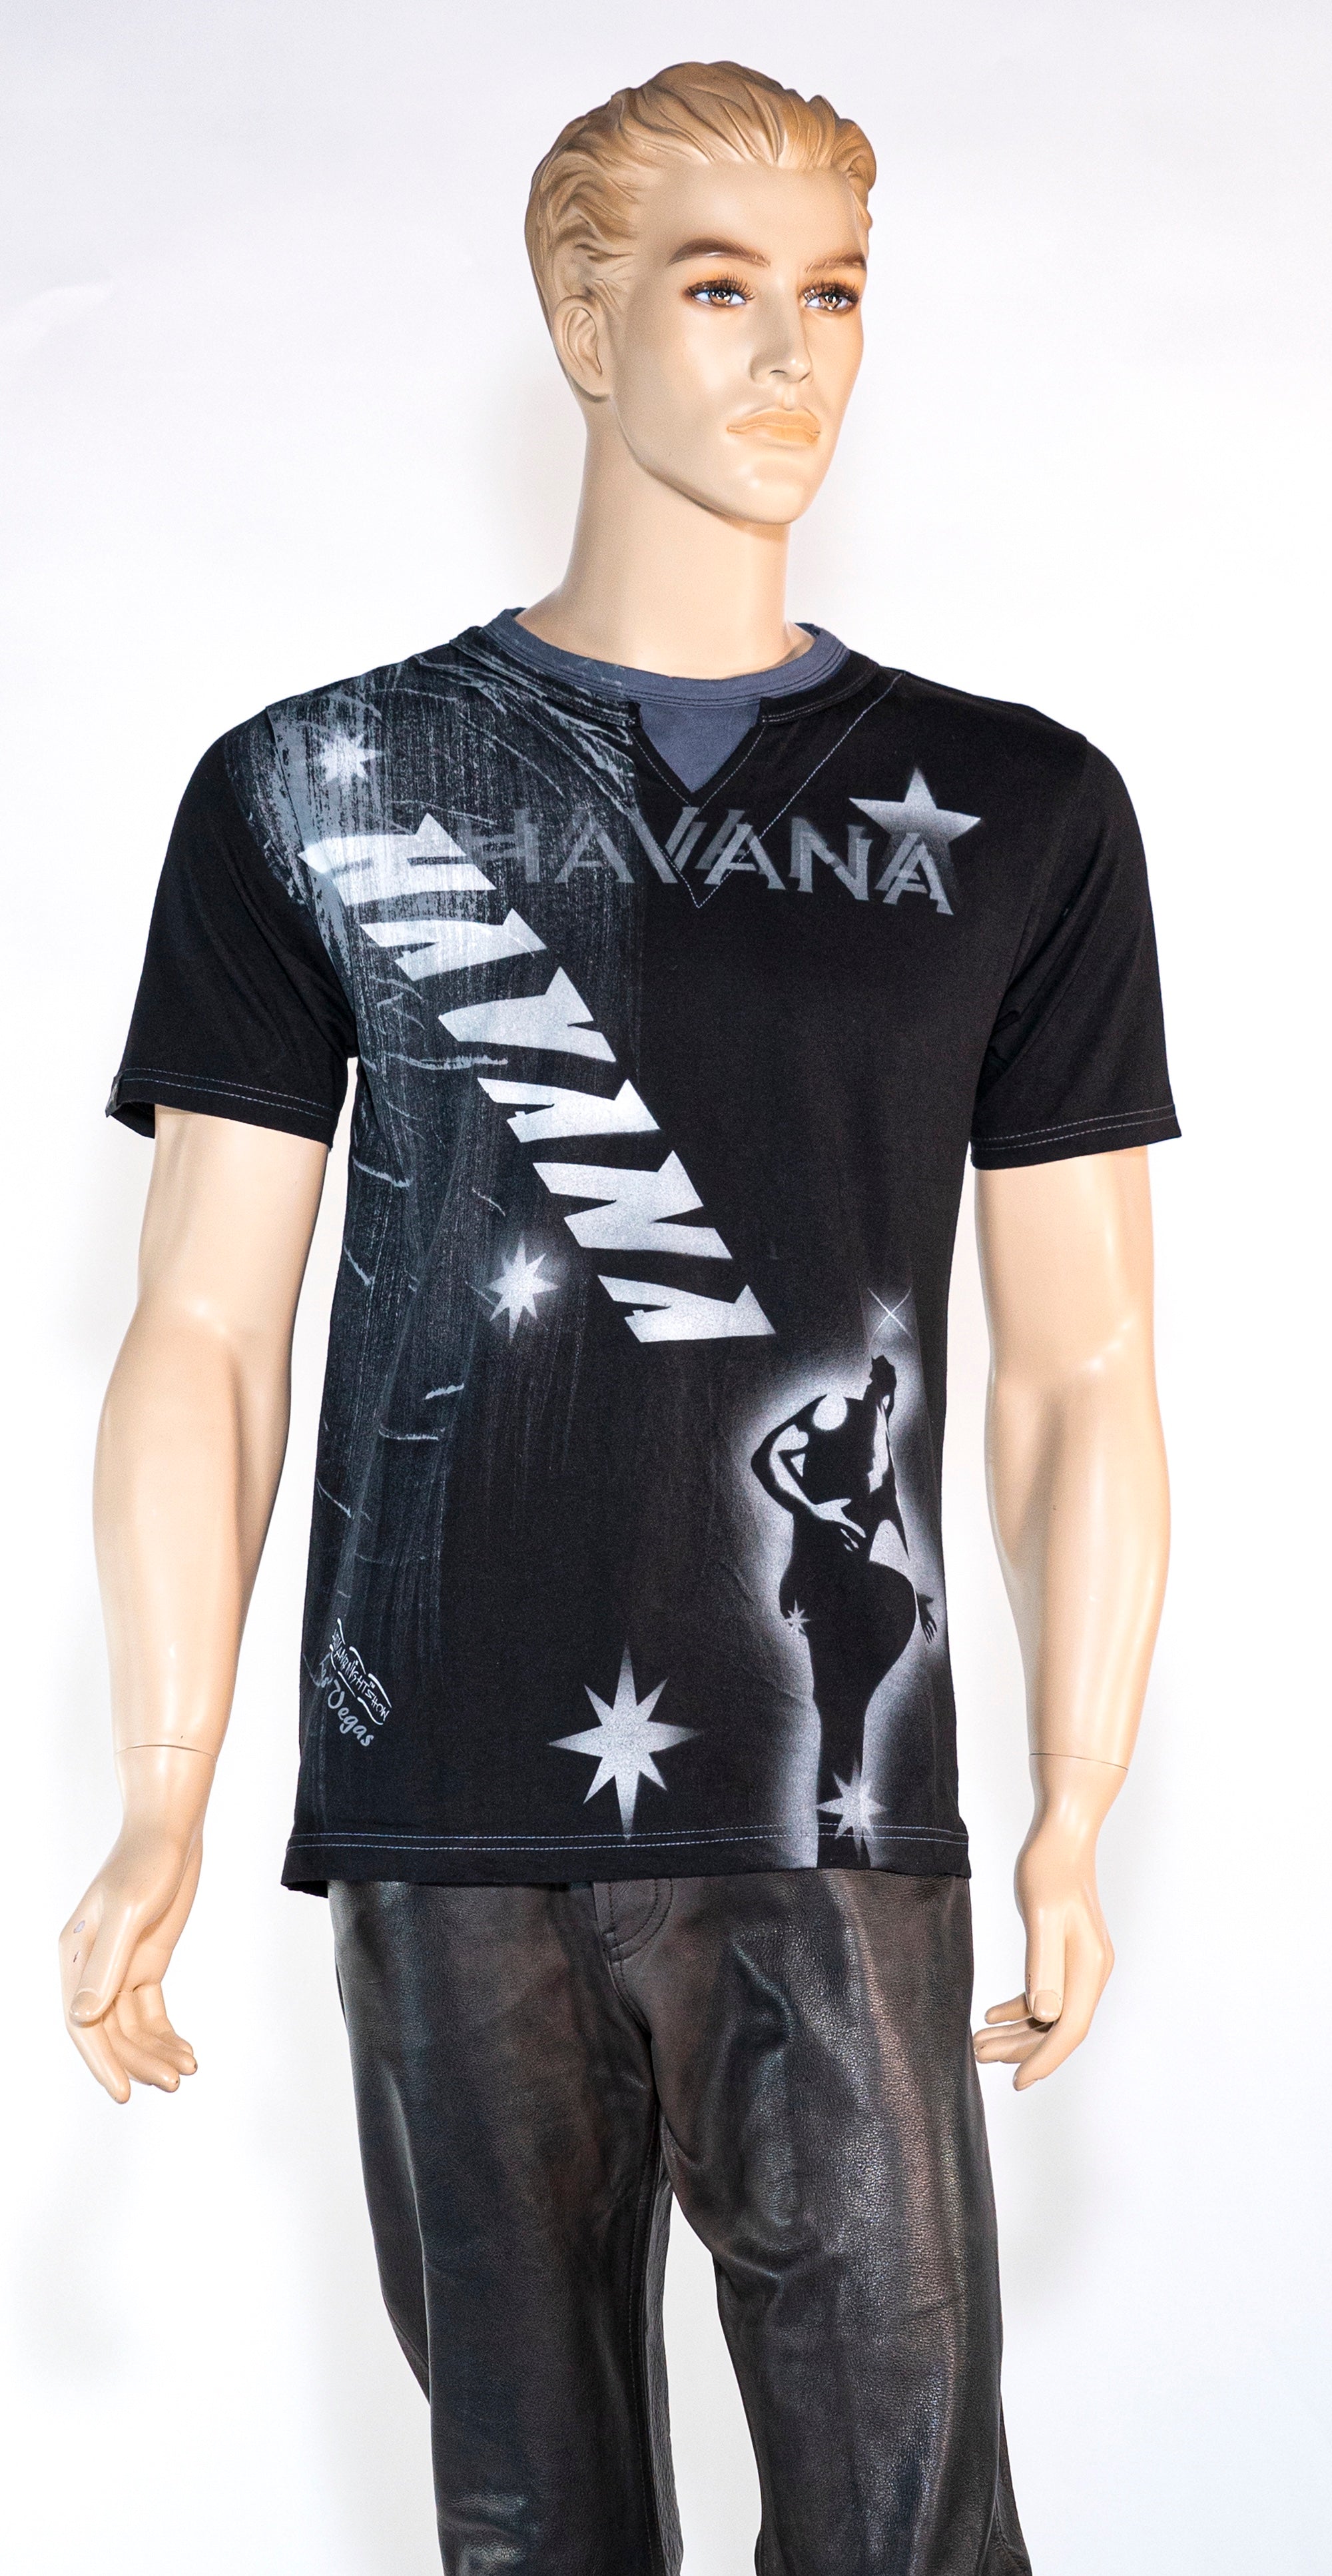 Havana Dancer Tee Shirt